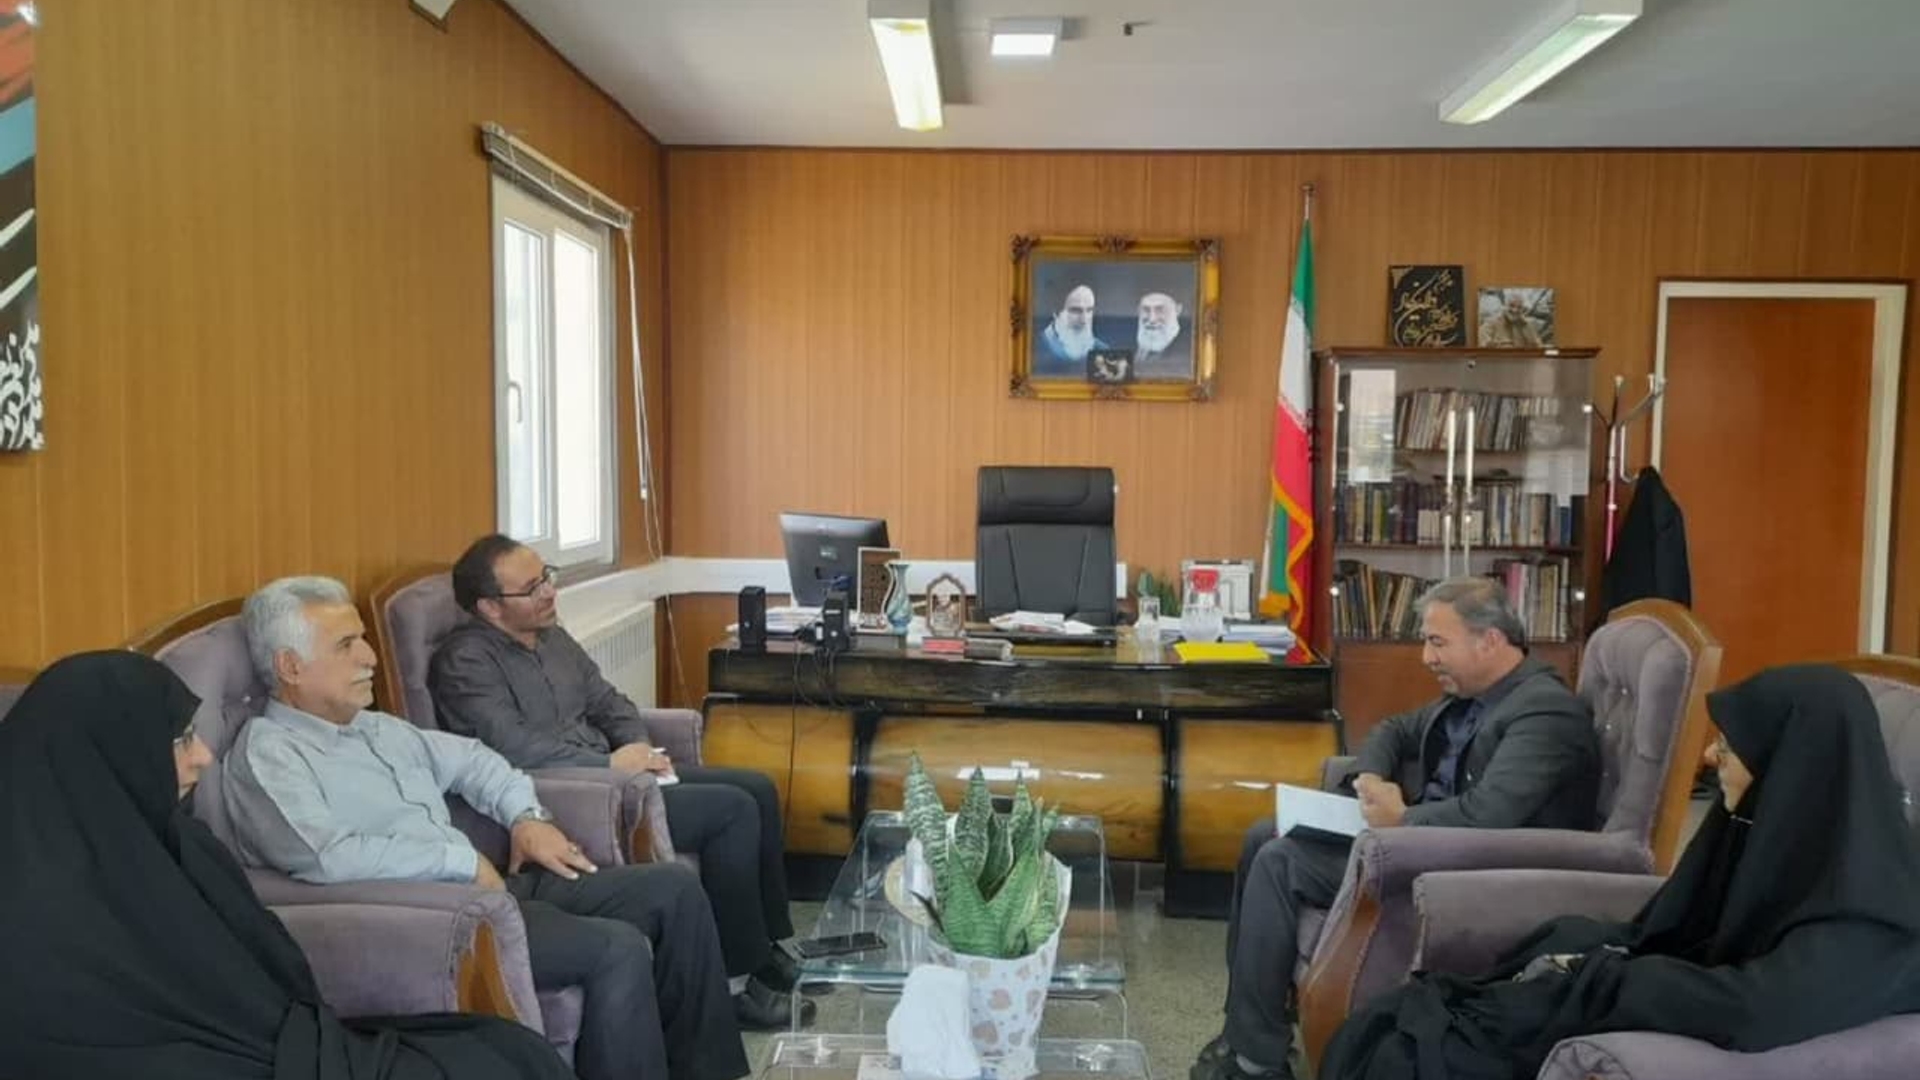 اعضای هیت مدیره شرکت توسعه و عمران با جواد اتابکی سرپرست فرمانداری شهرستان تفرش در دفتر فرمانداری دیدار کردند      :